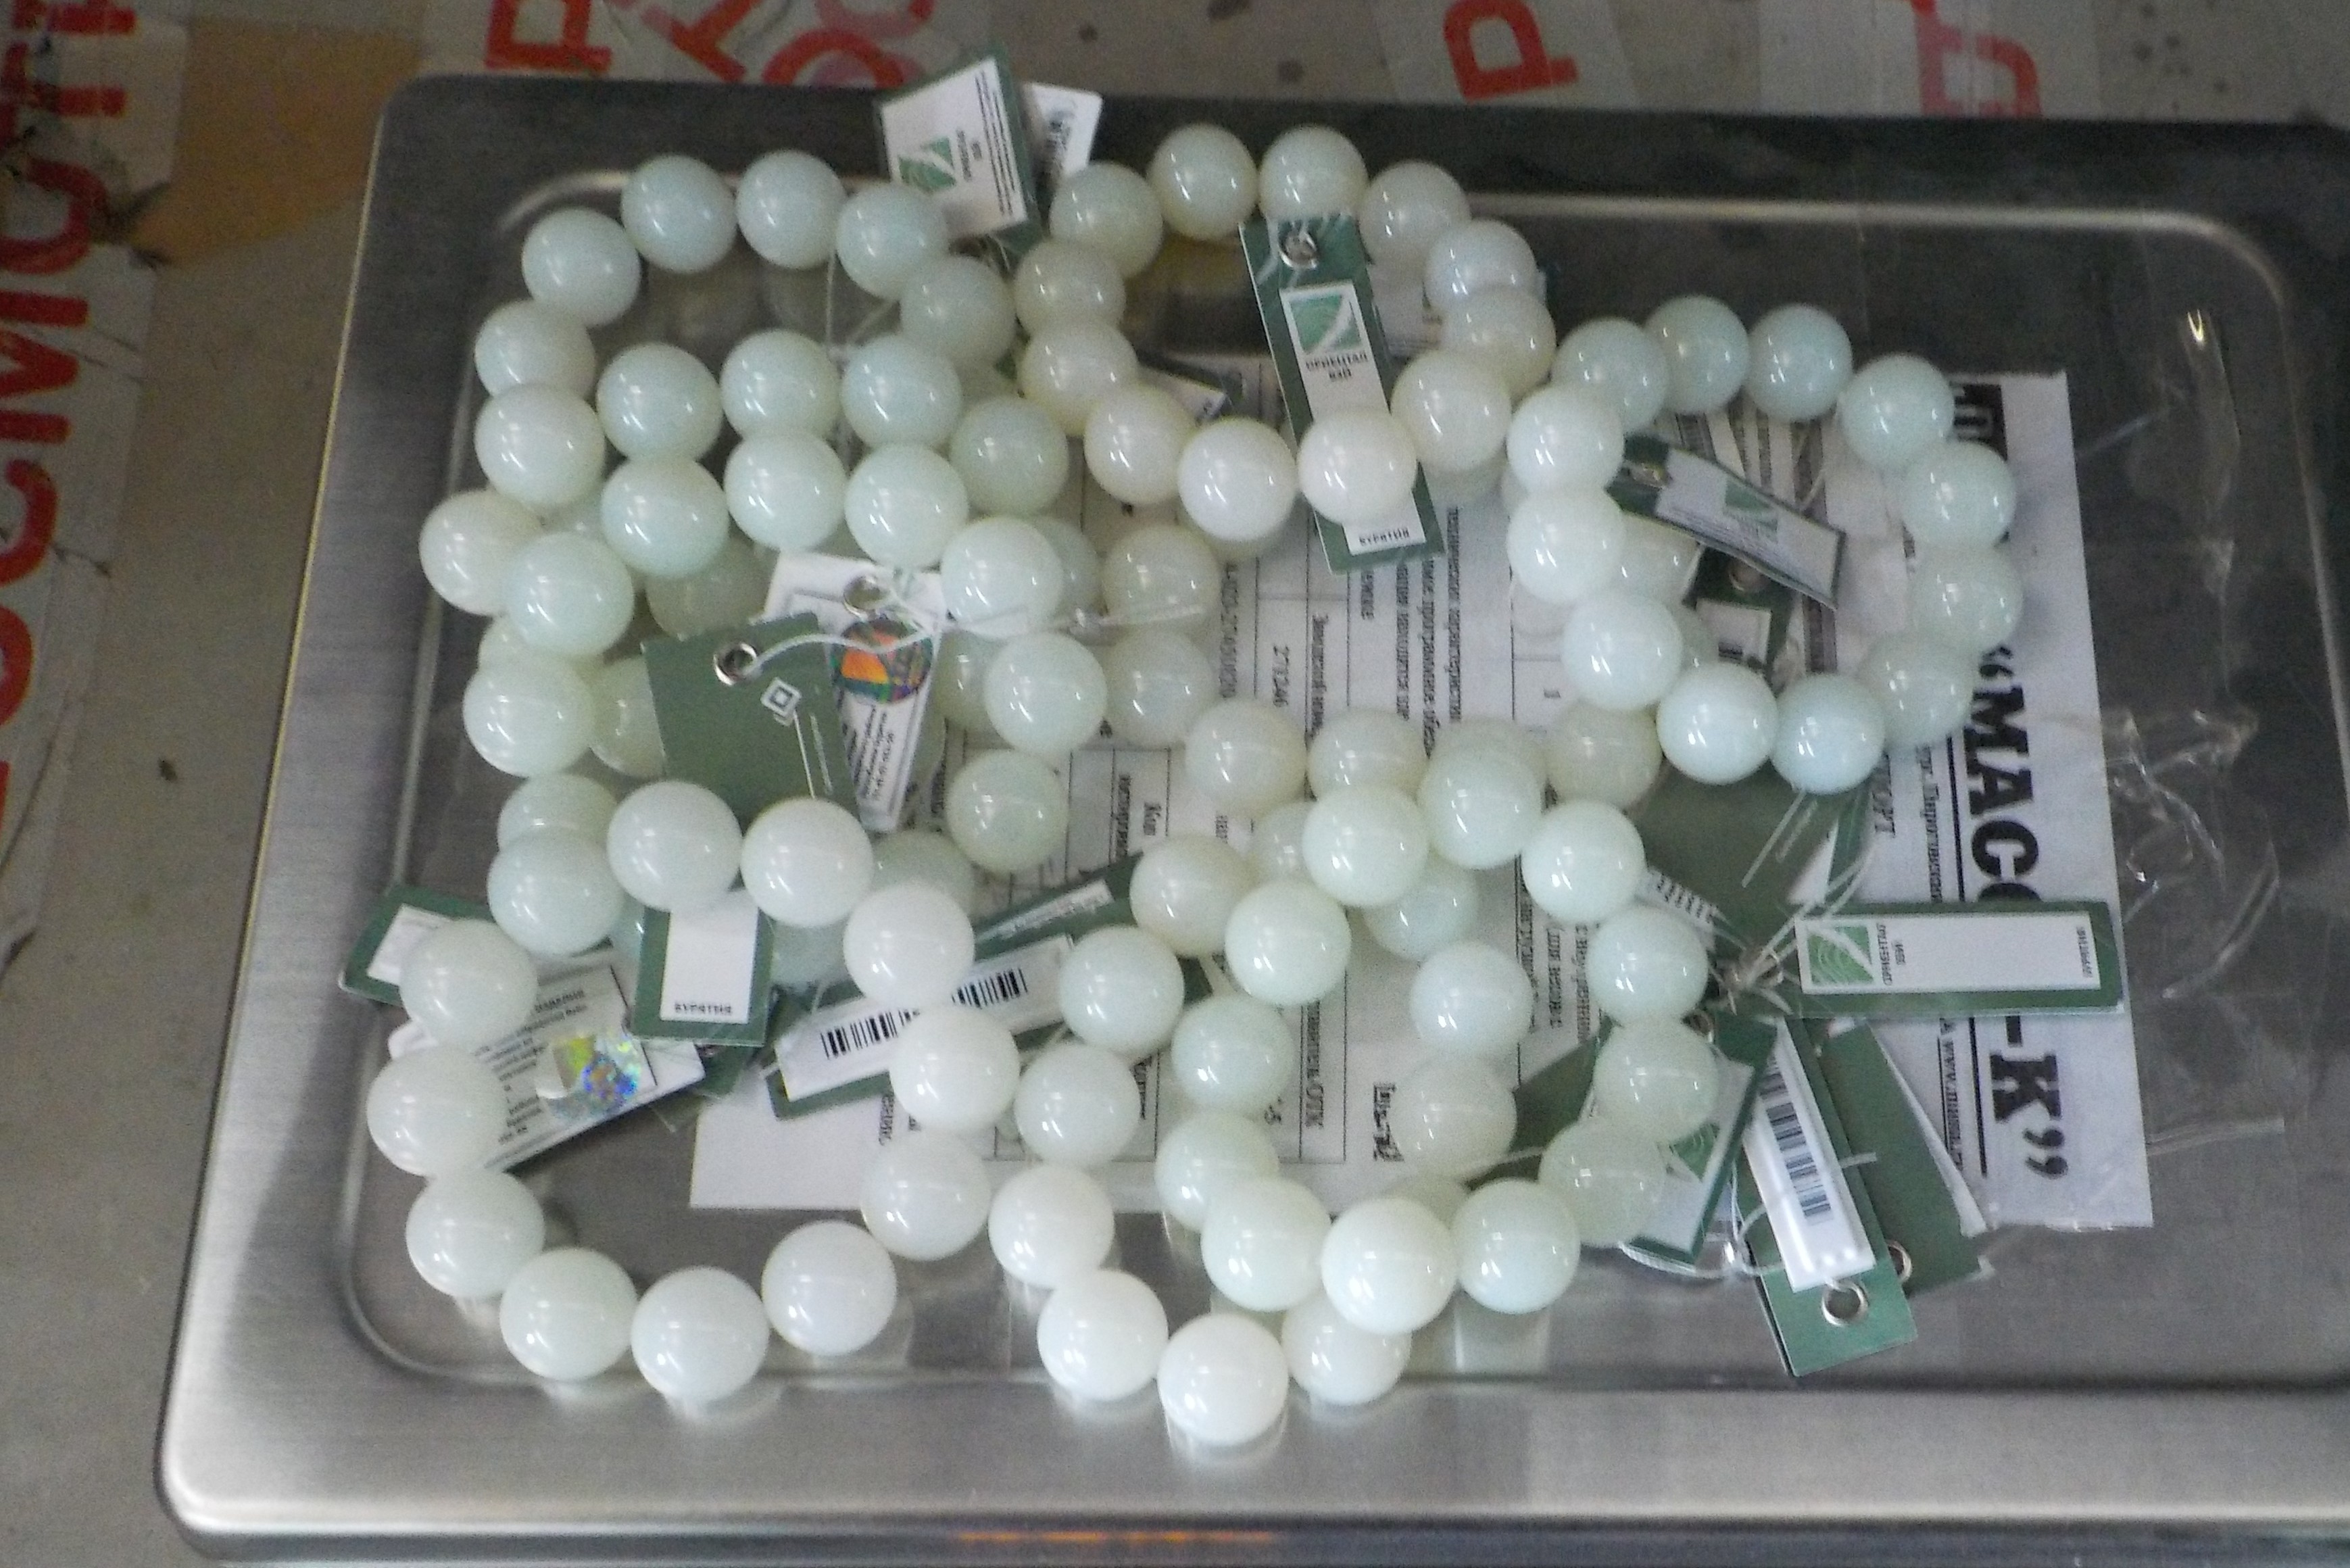 Нефритовые браслеты в вагонах с лесом обнаружили таможенники в Забайкалье